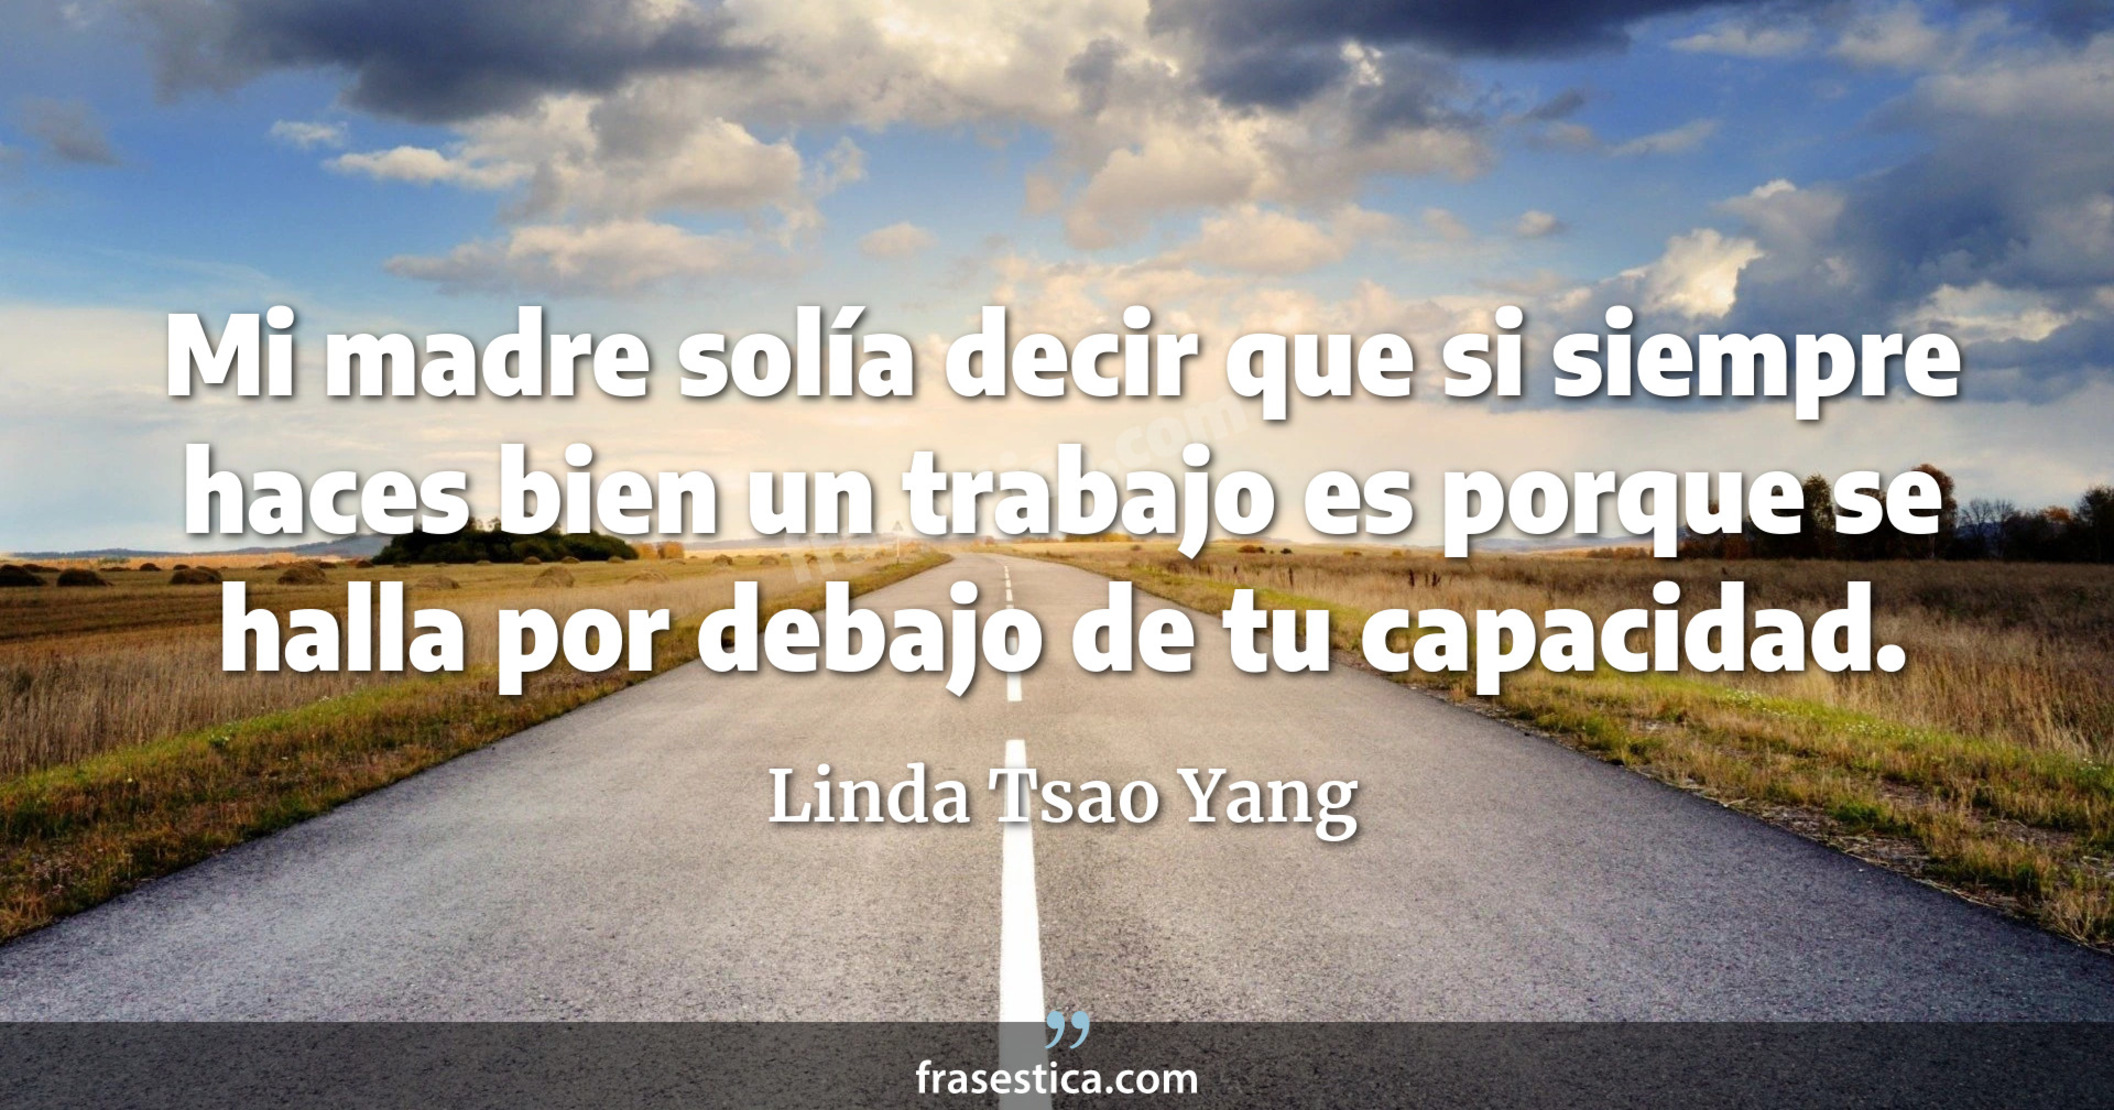 Mi madre solía decir que si siempre haces bien un trabajo es porque se halla por debajo de tu capacidad. - Linda Tsao Yang